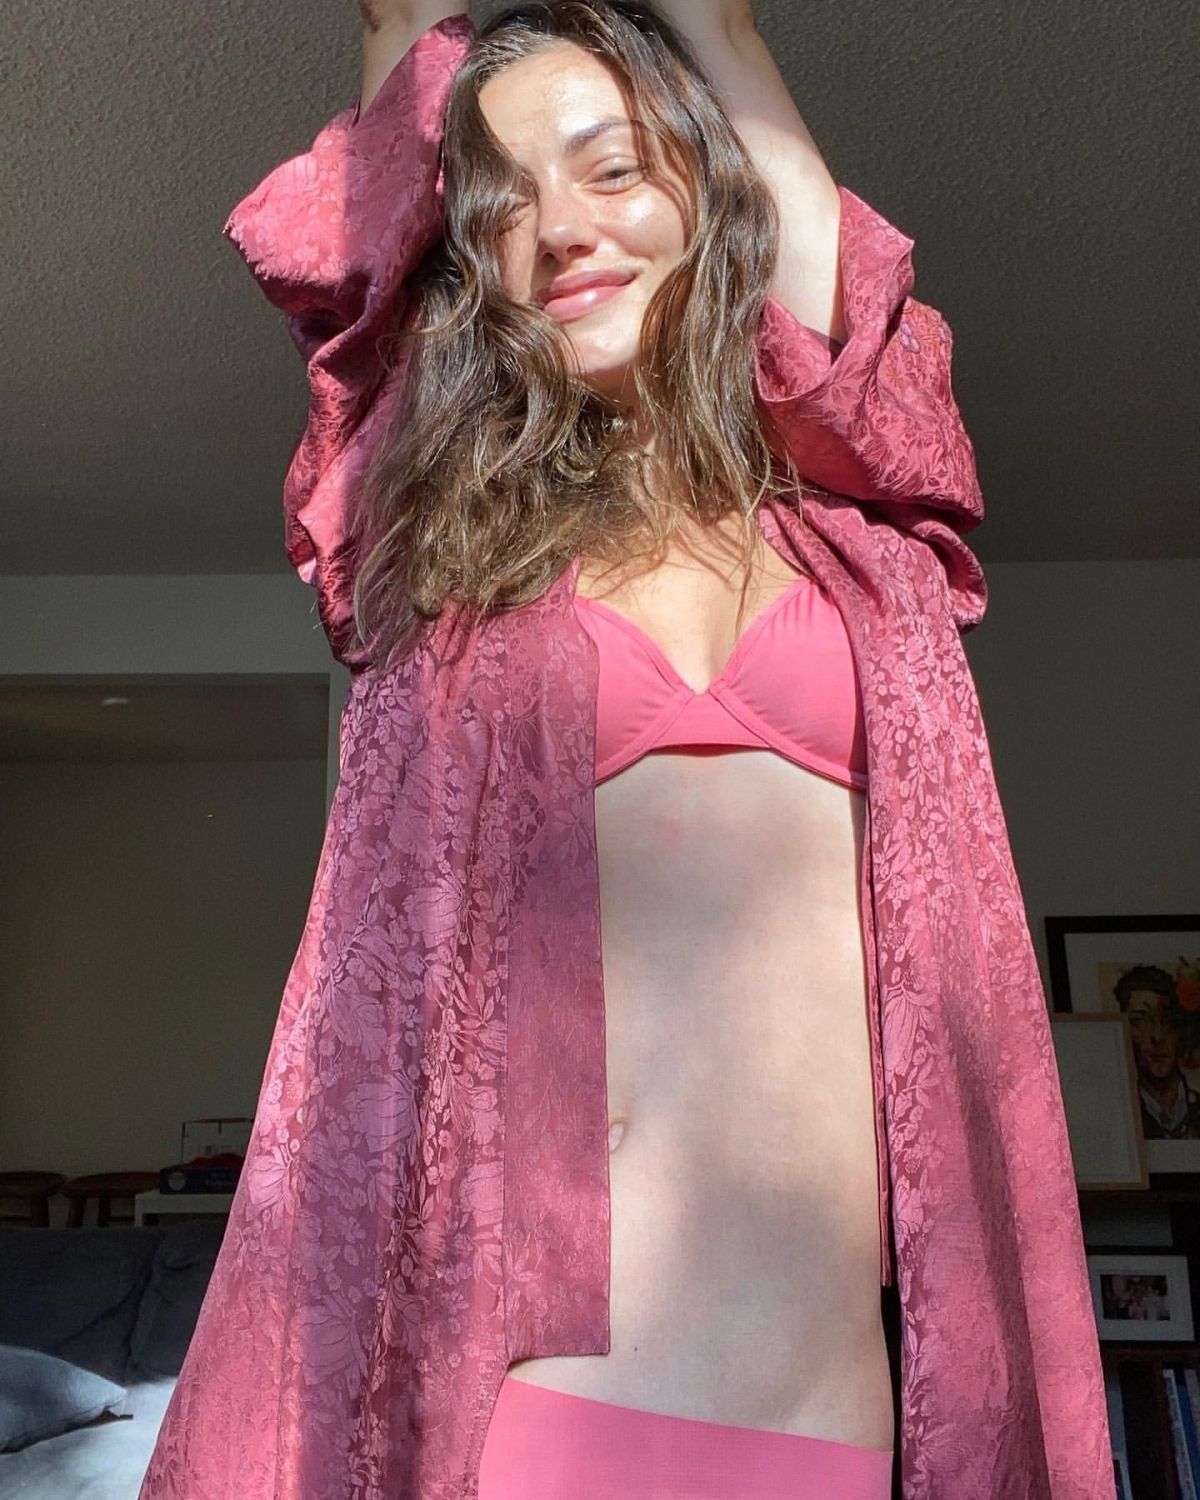 Phoebe Tonkin in Pink Bikini Photoshoot, October 2020